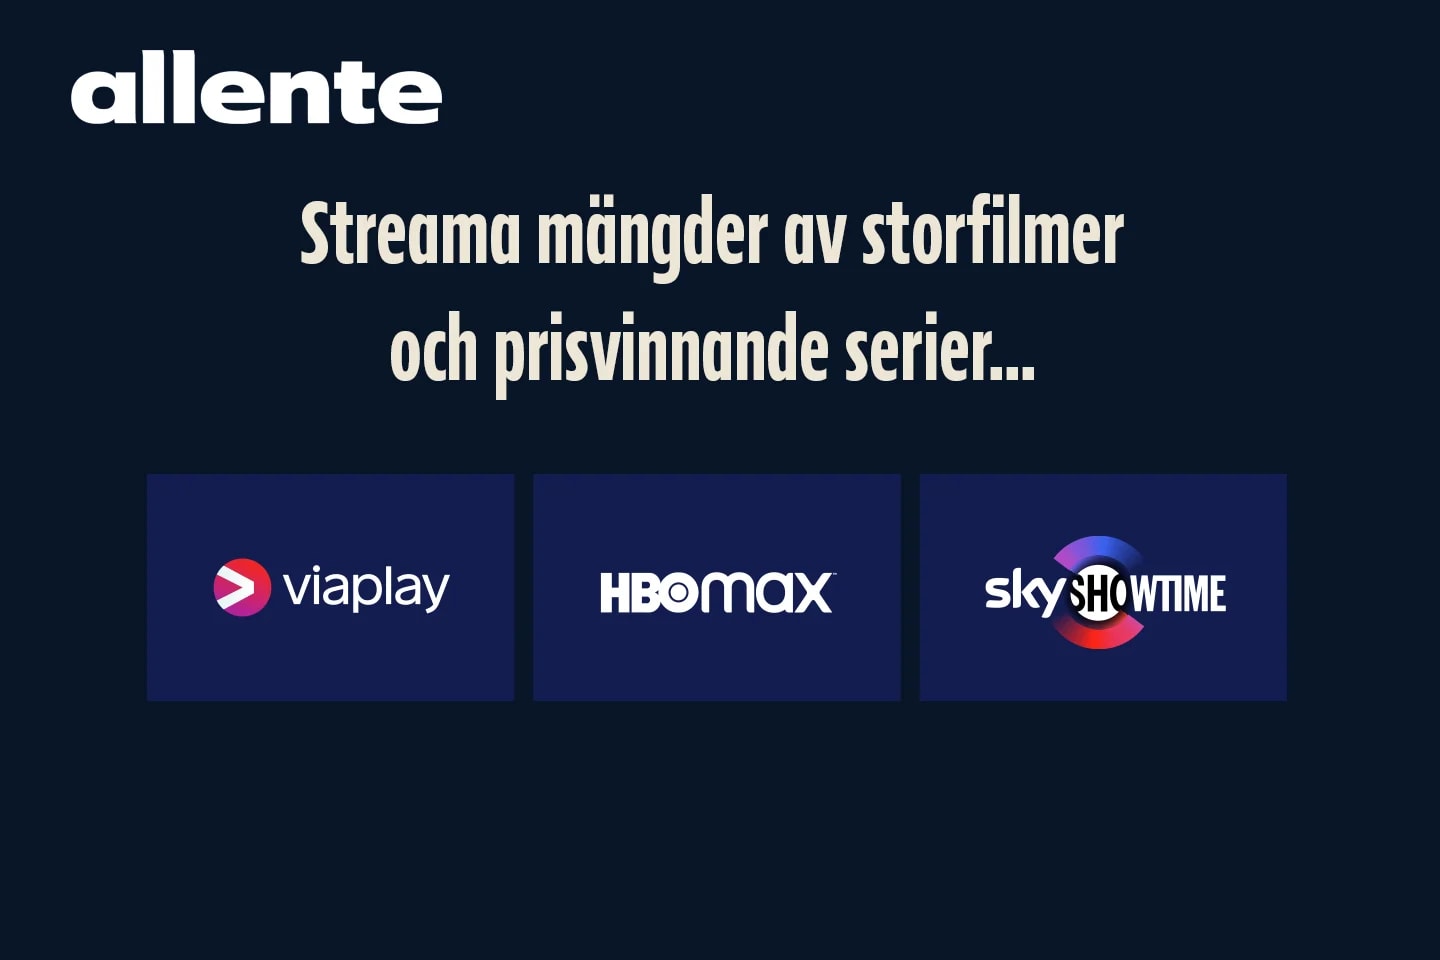 Allente stream inkl. Viaplay Film, Serier & Sport, Sky Showtime, HBO Max + 12 kanaler (1 av 3)